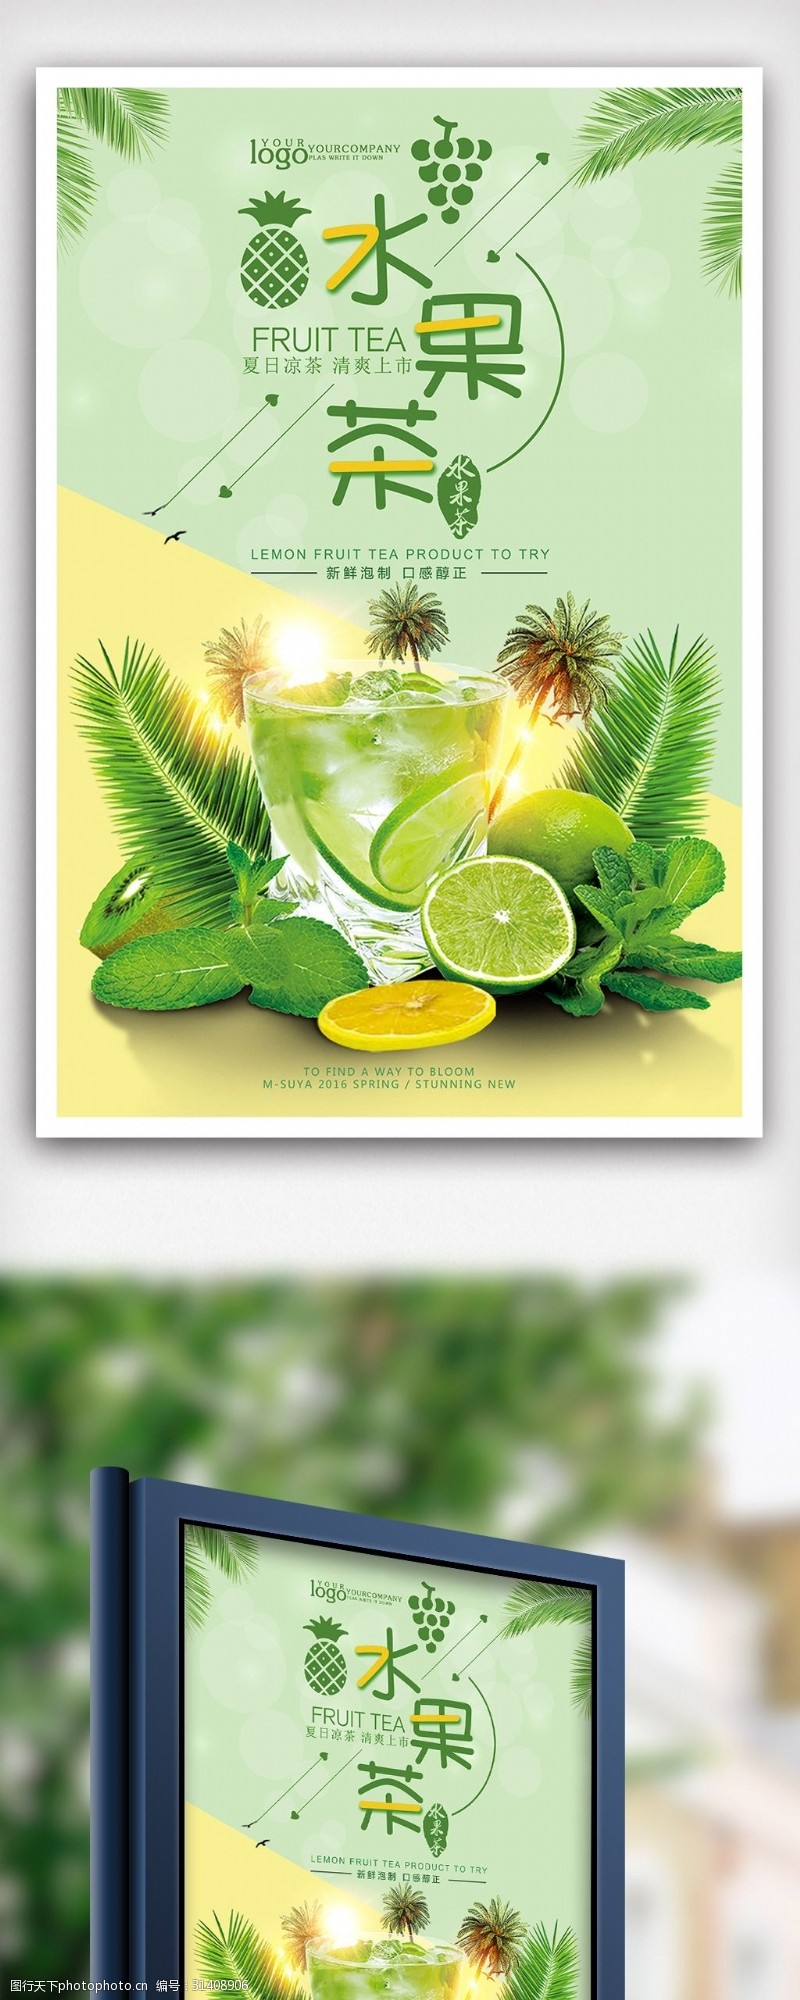 新品上市宣传水果茶新品宣传海报设计